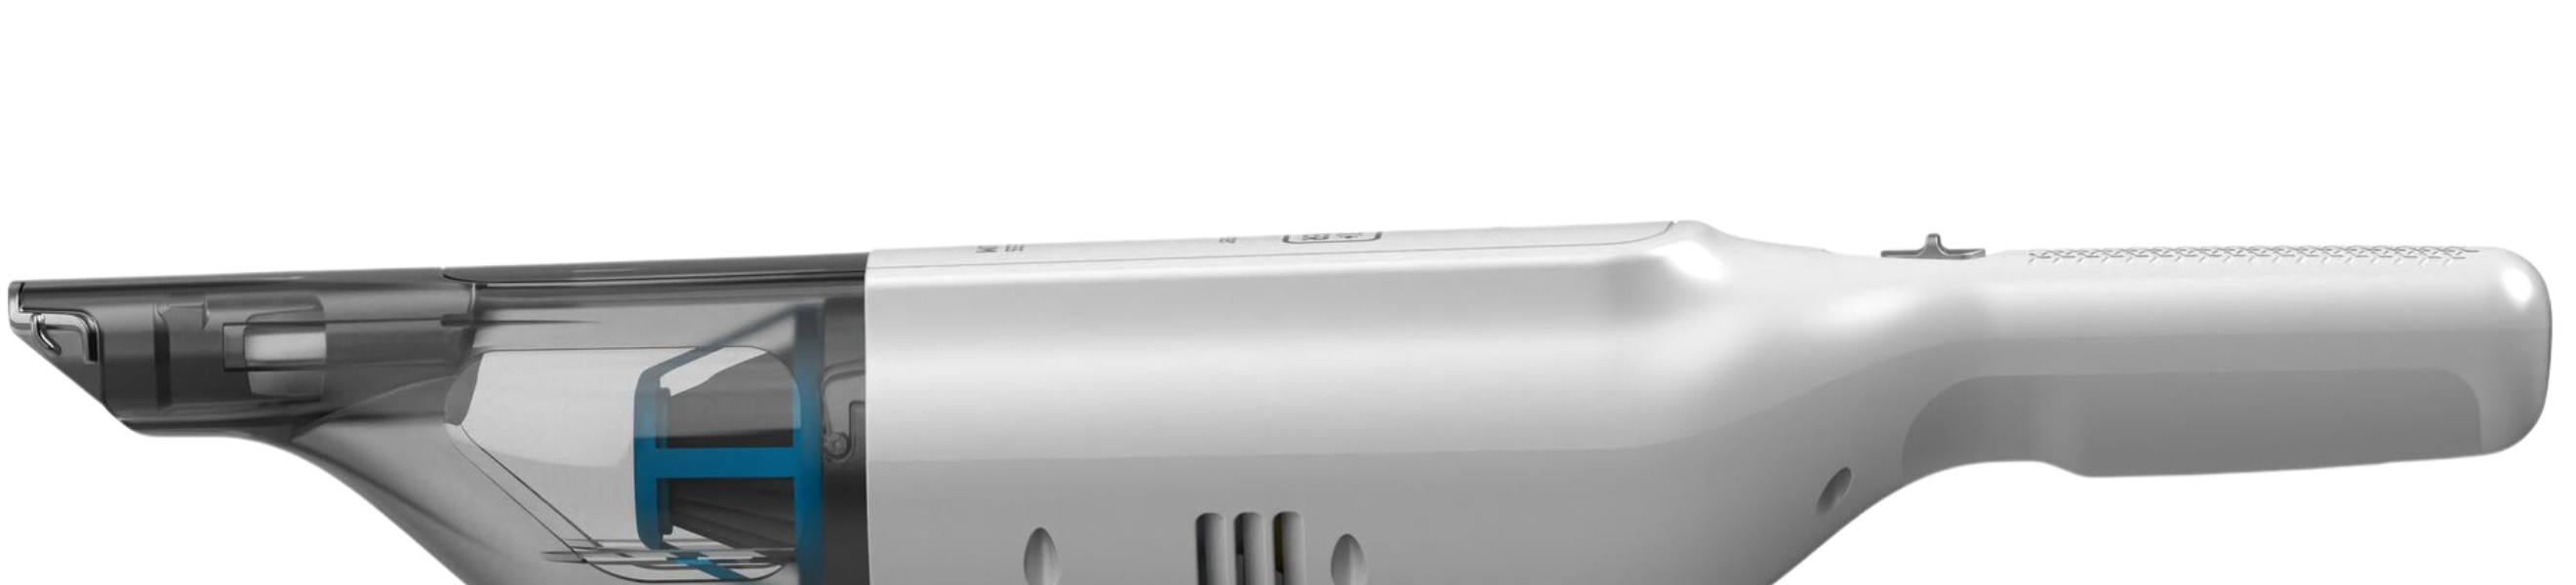 Black & Decker HLVC315B10 12V Max Dustbuster AdvancedClean Cordless Slim Handheld Vacuum - White